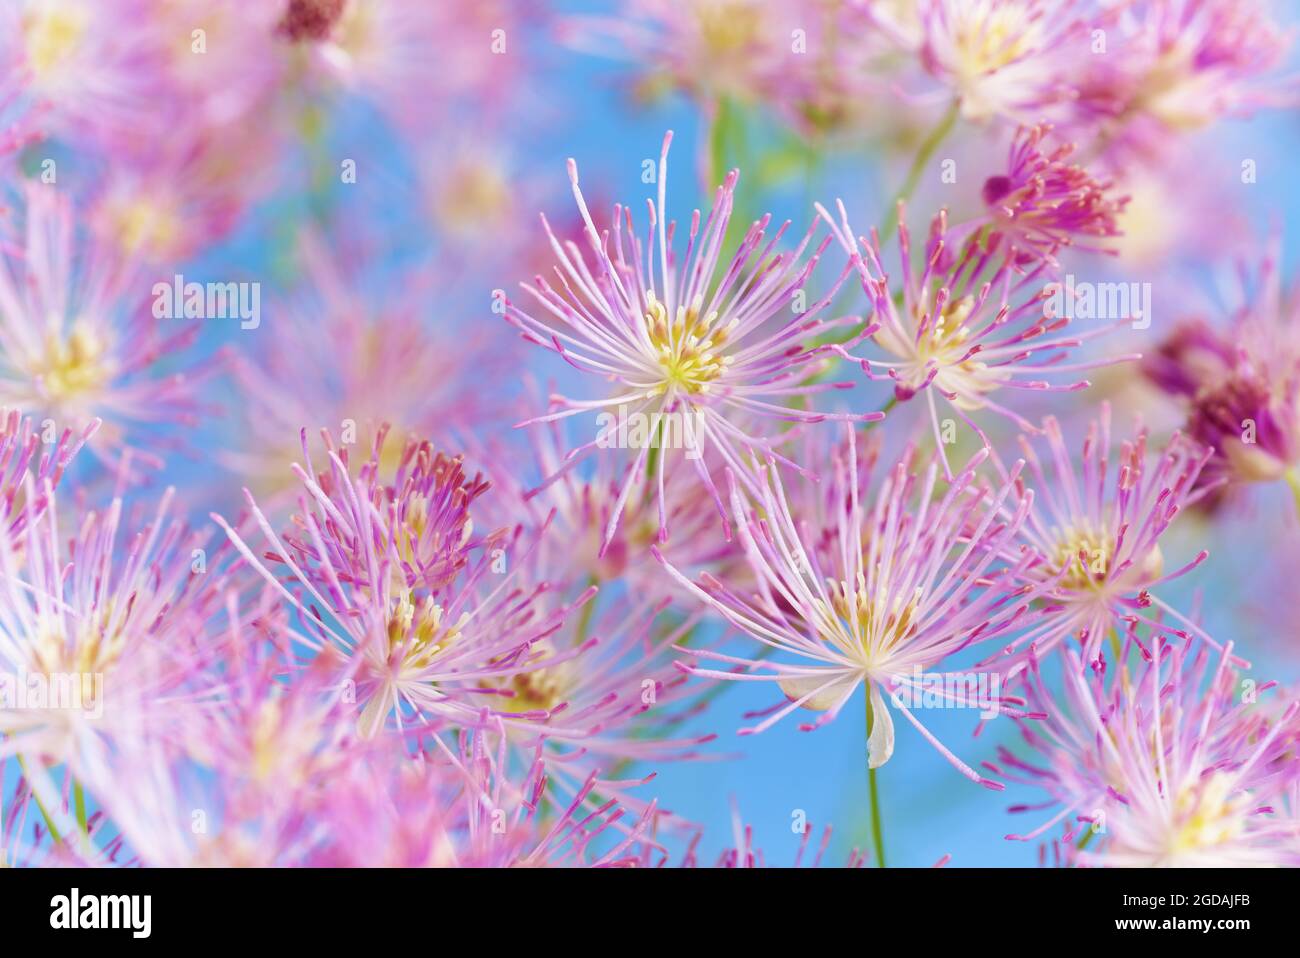 Têtes de fleur de valériane communes. Fond bleu ciel. Macro. Rose vif et blanc, écran de têtes de fleurs. Magnifique motif rose. Écosse, Royaume-Uni Banque D'Images